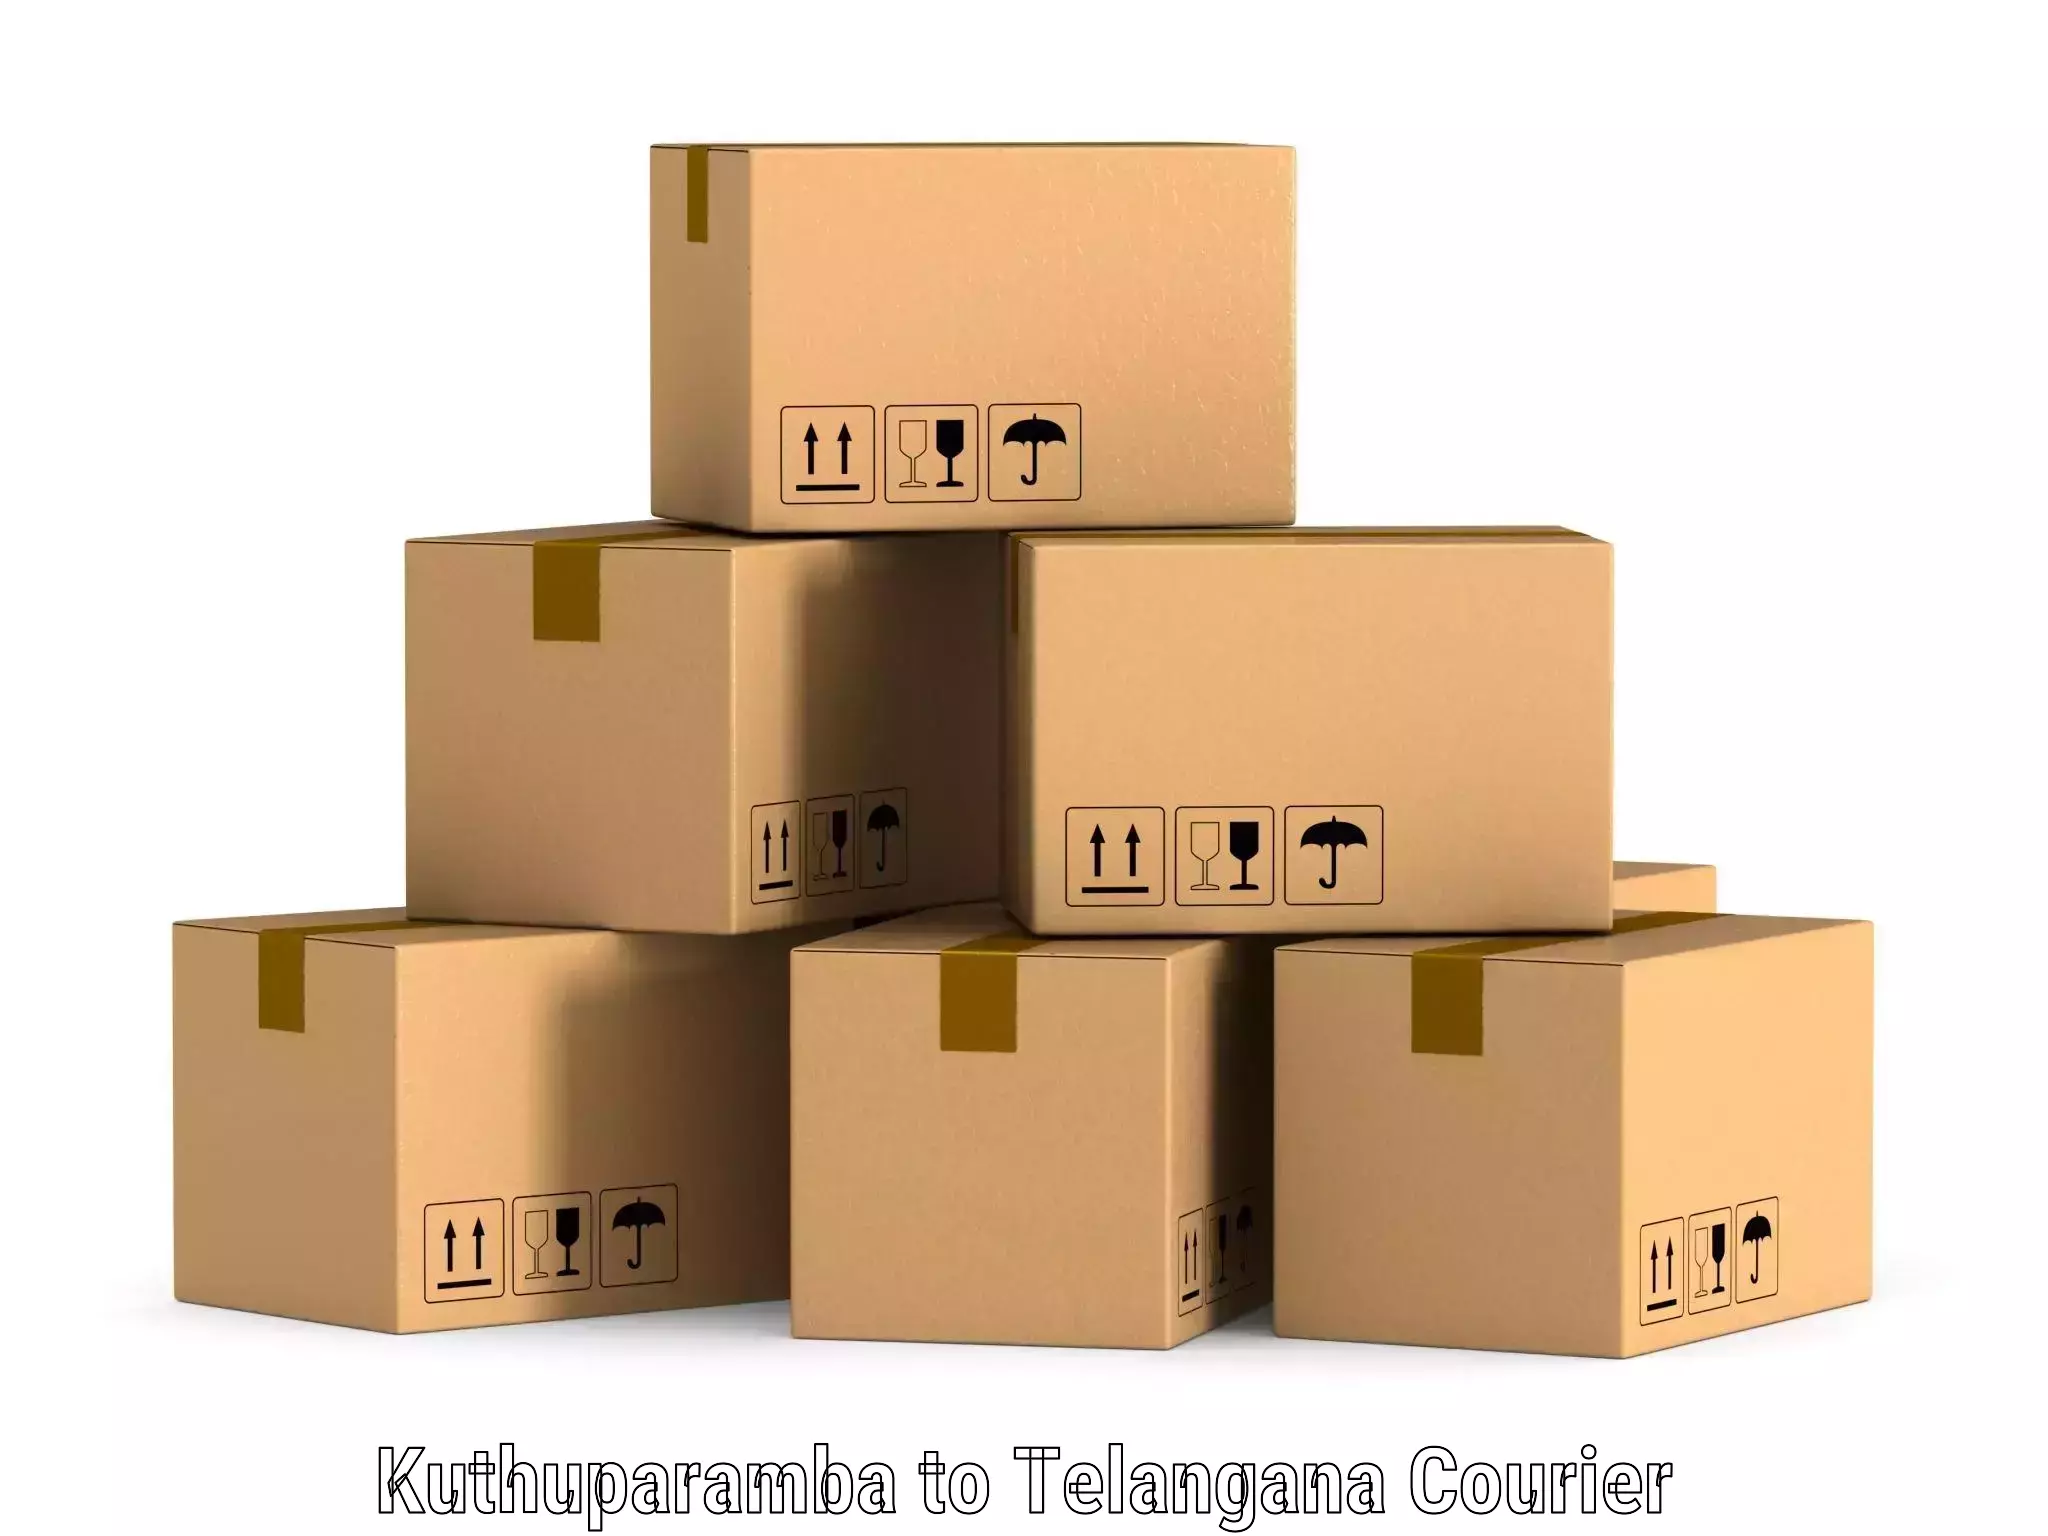 Smart courier technologies Kuthuparamba to Yerrupalem